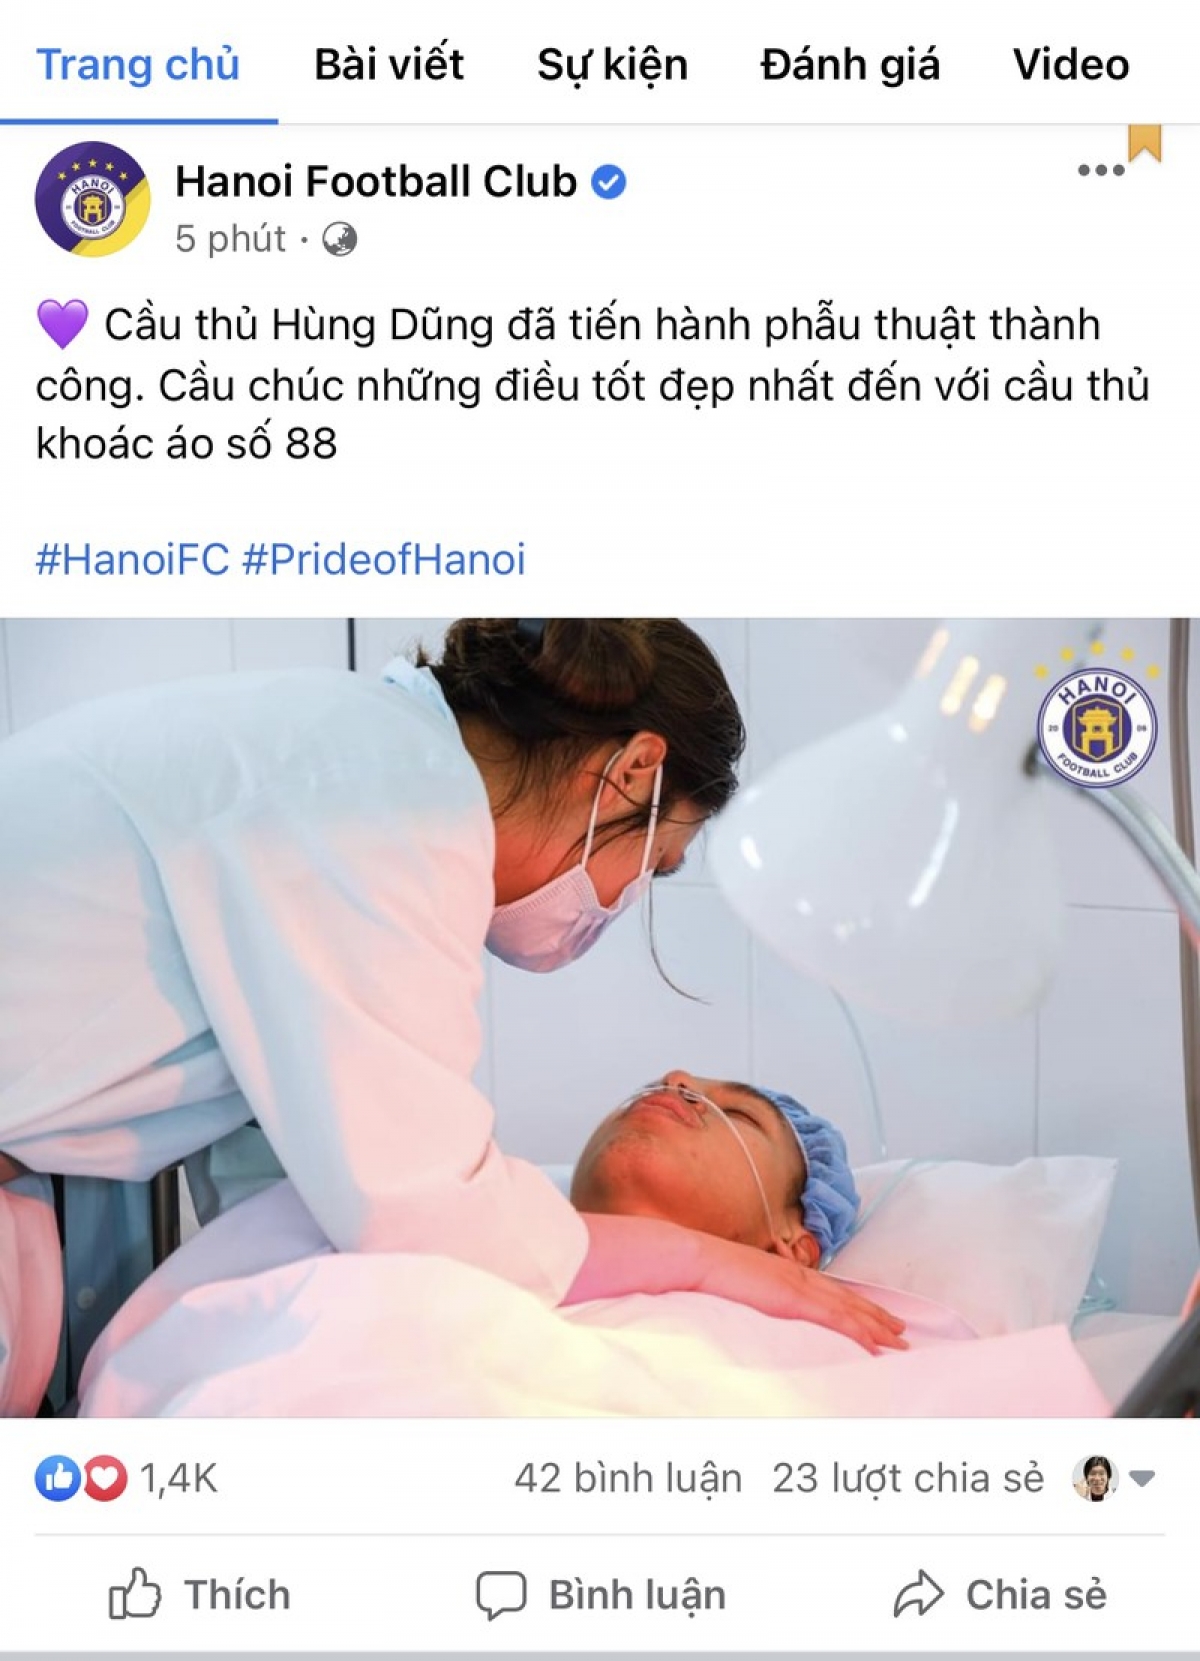 Fanpages CLB Hà Nội thông tin Hùng Dũng phẫu thuật thành công